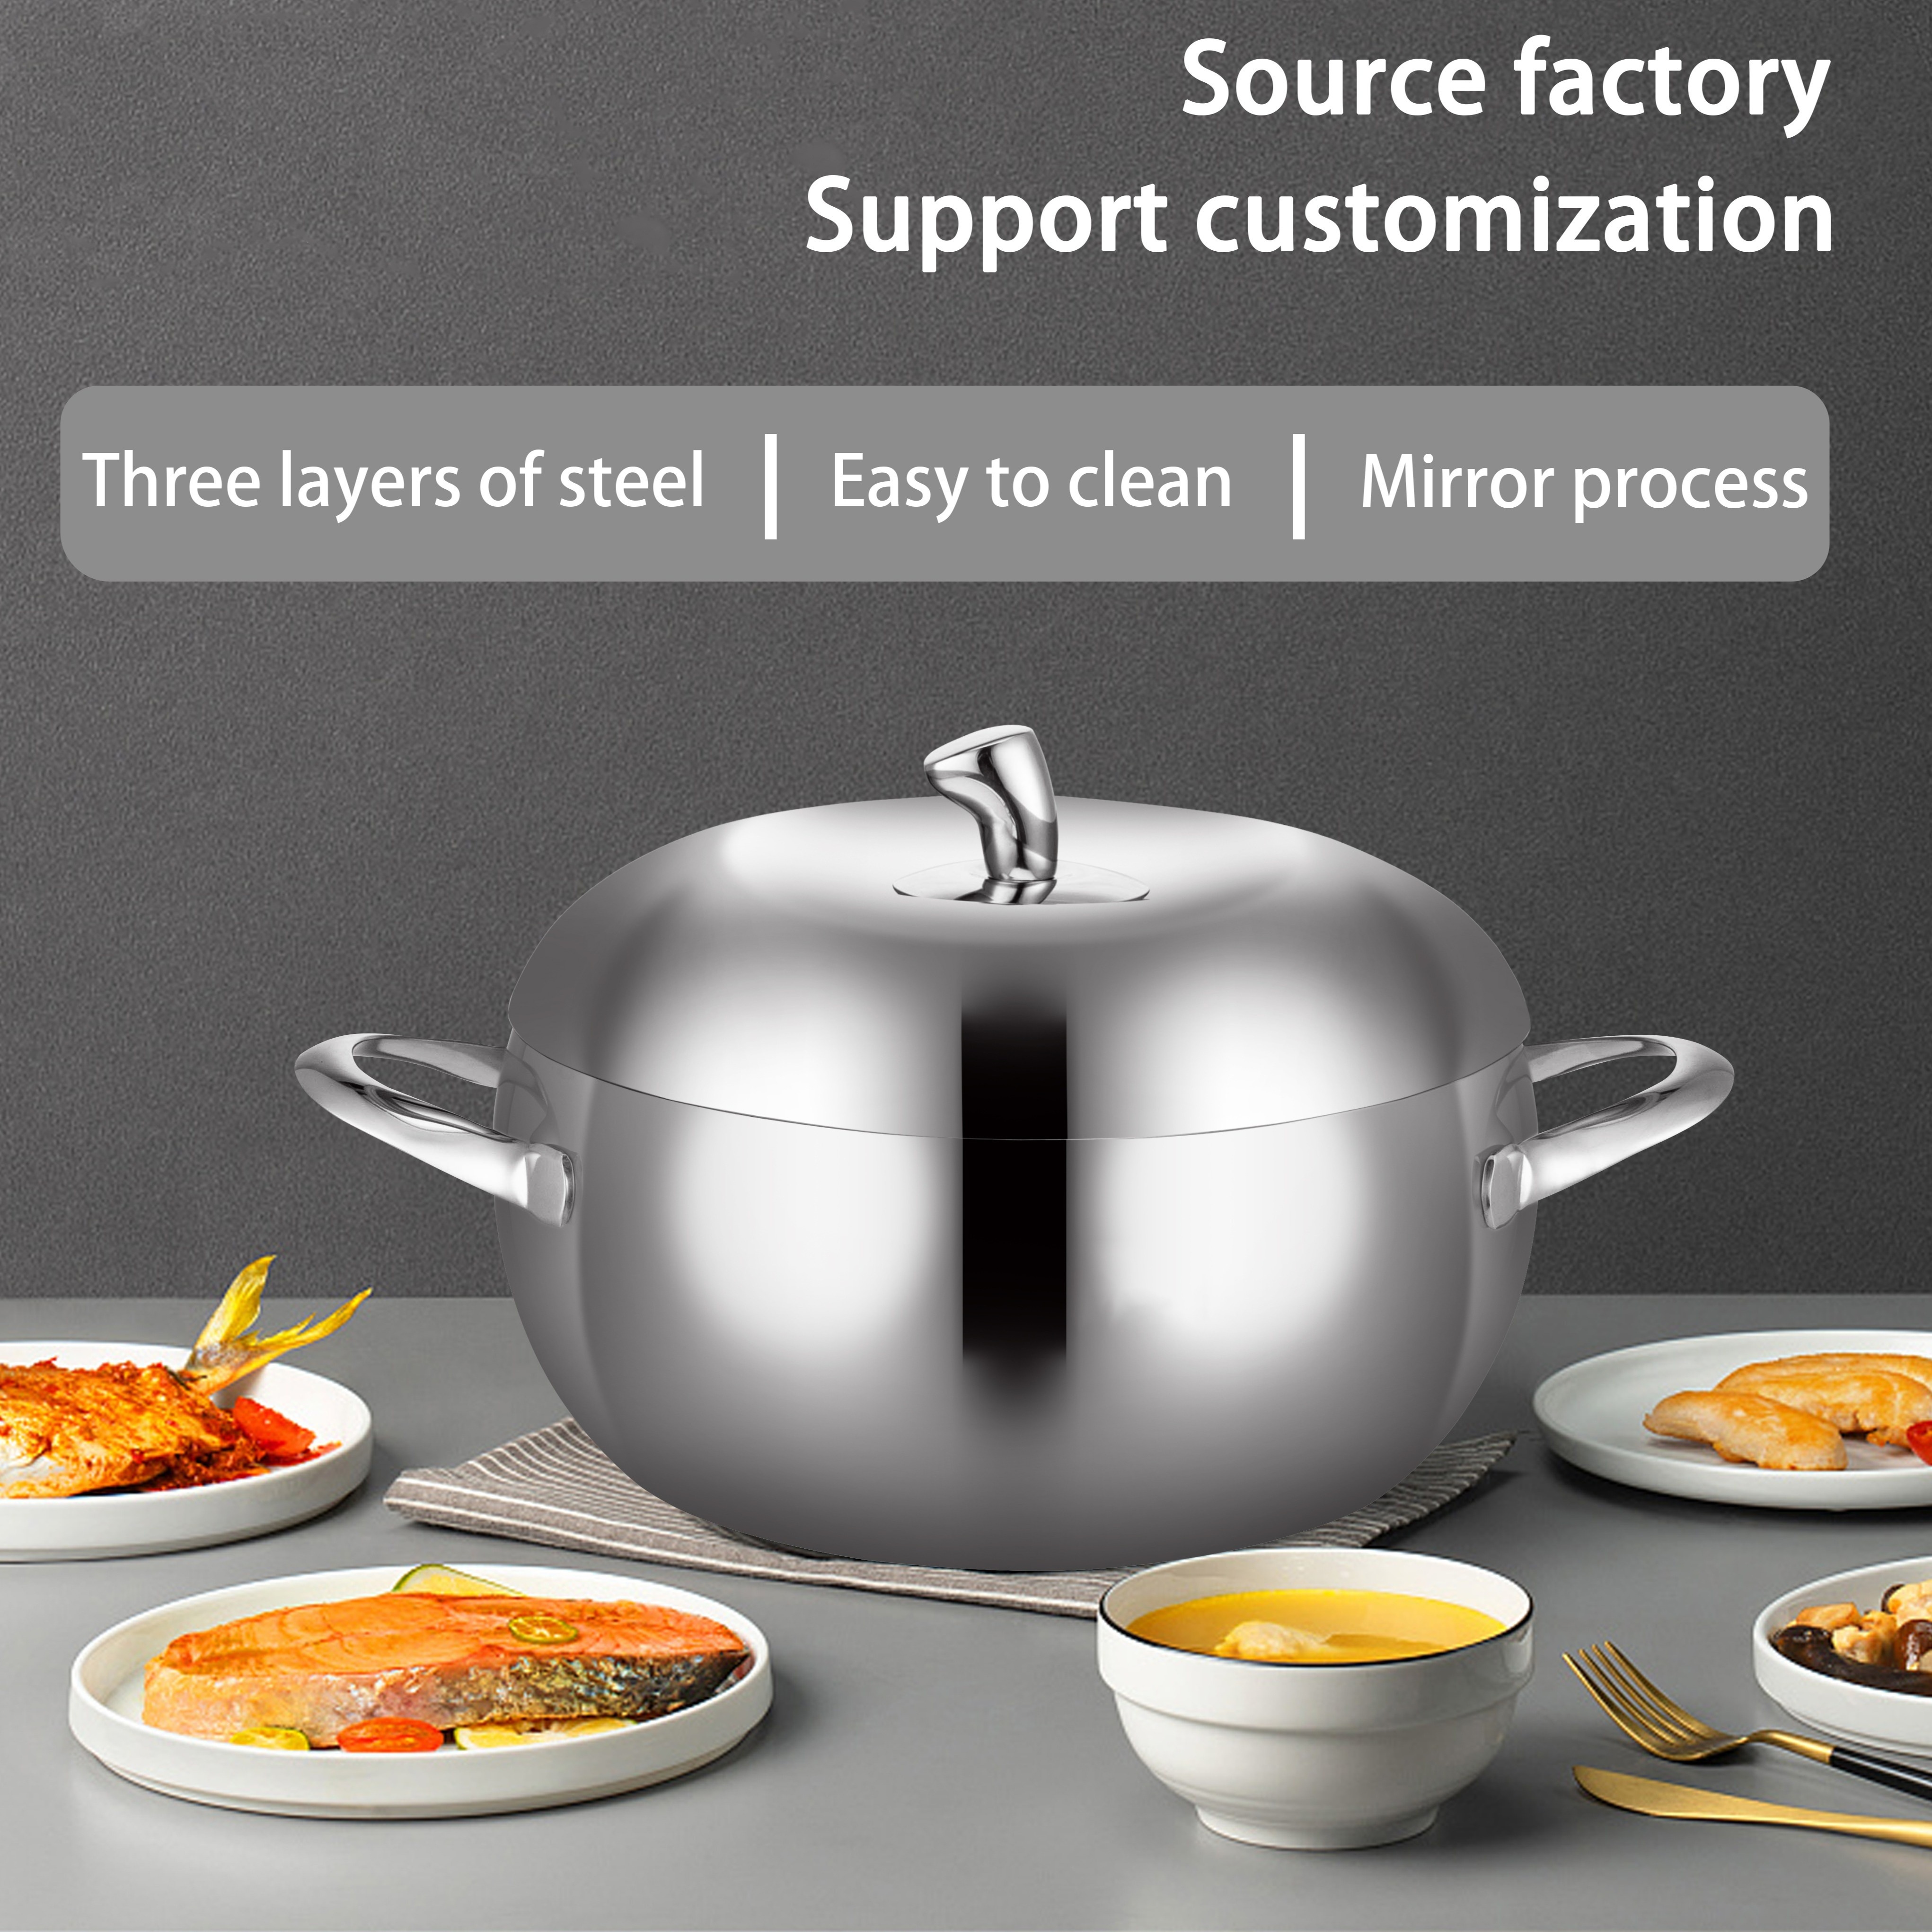 Borvat® - Micro-autocuiseur émaillé - Marmite à soupe domestique - Grande  capacité 